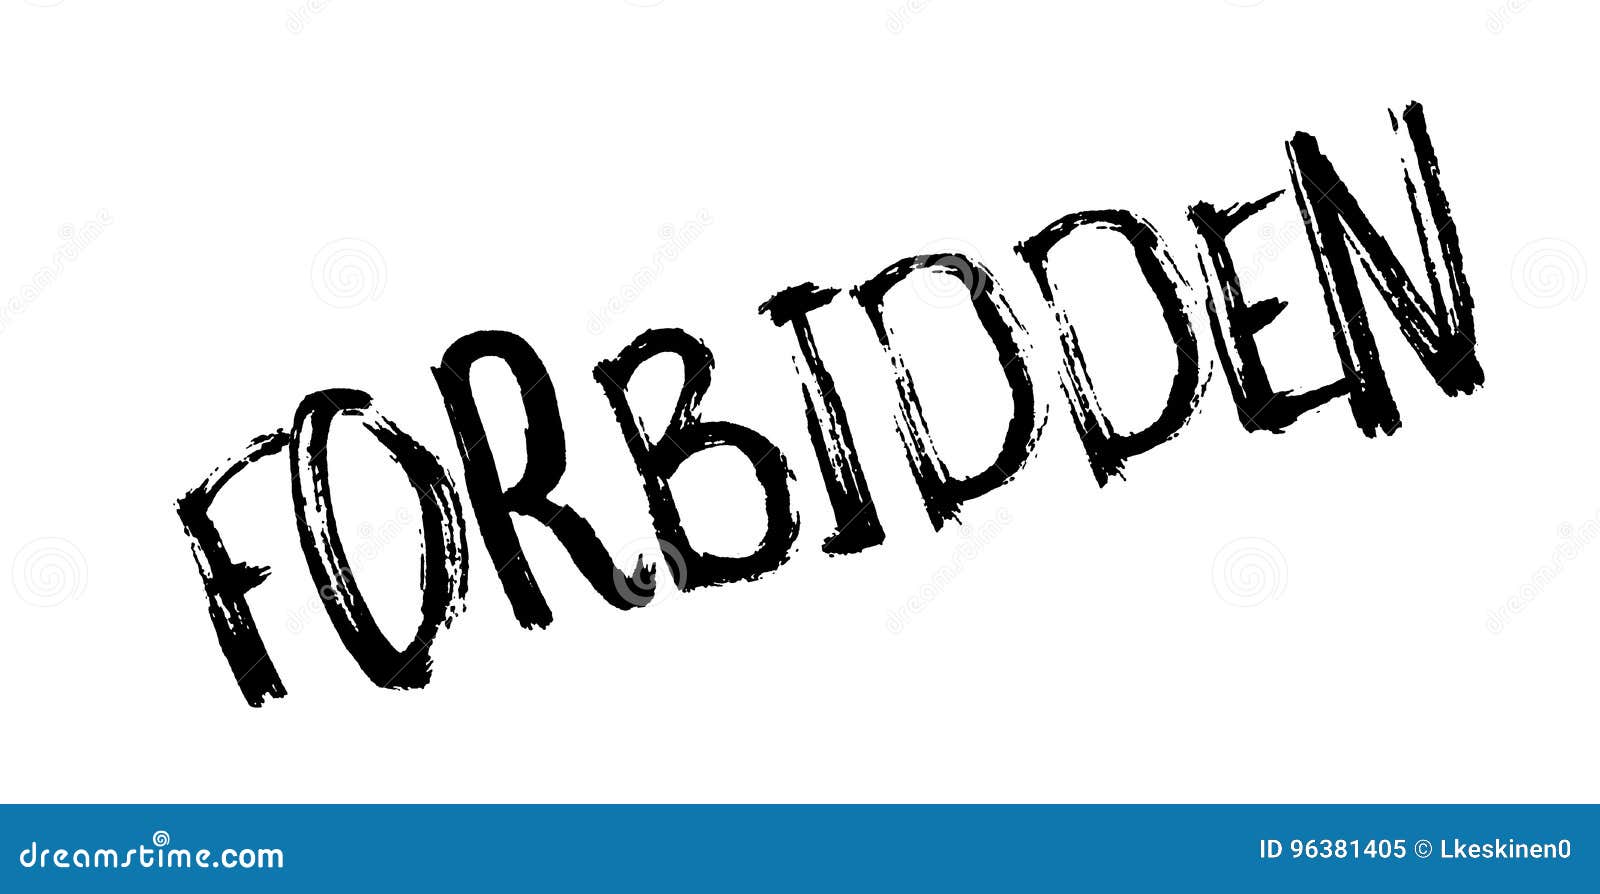 Forbidden rubber stamp stock vector. Illustration of forbidden - 96381405